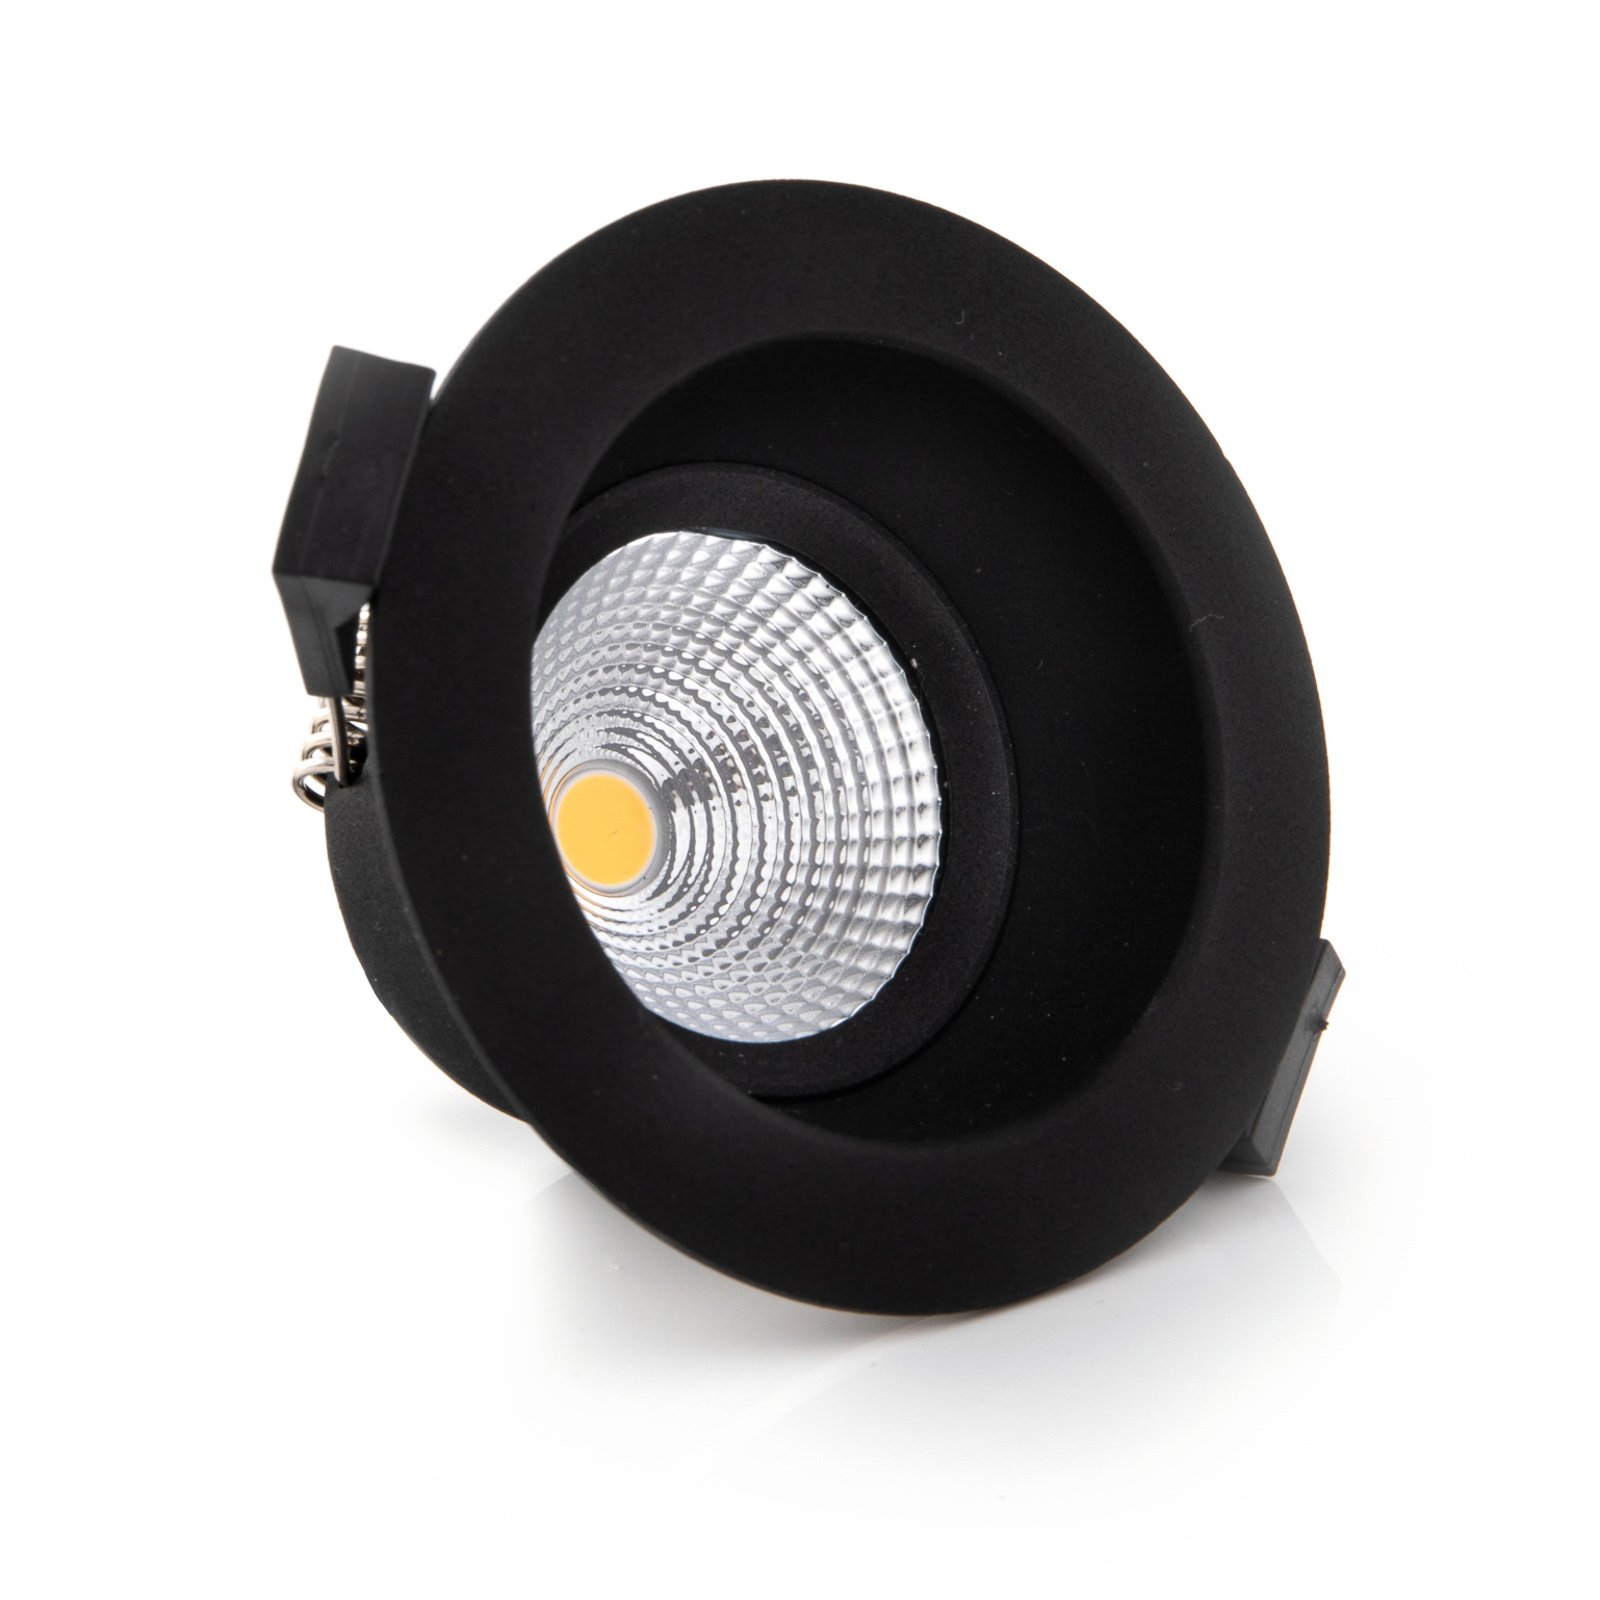 SLC One Soft LED süllyesztett reflektor, fekete színű, tompított-melegre